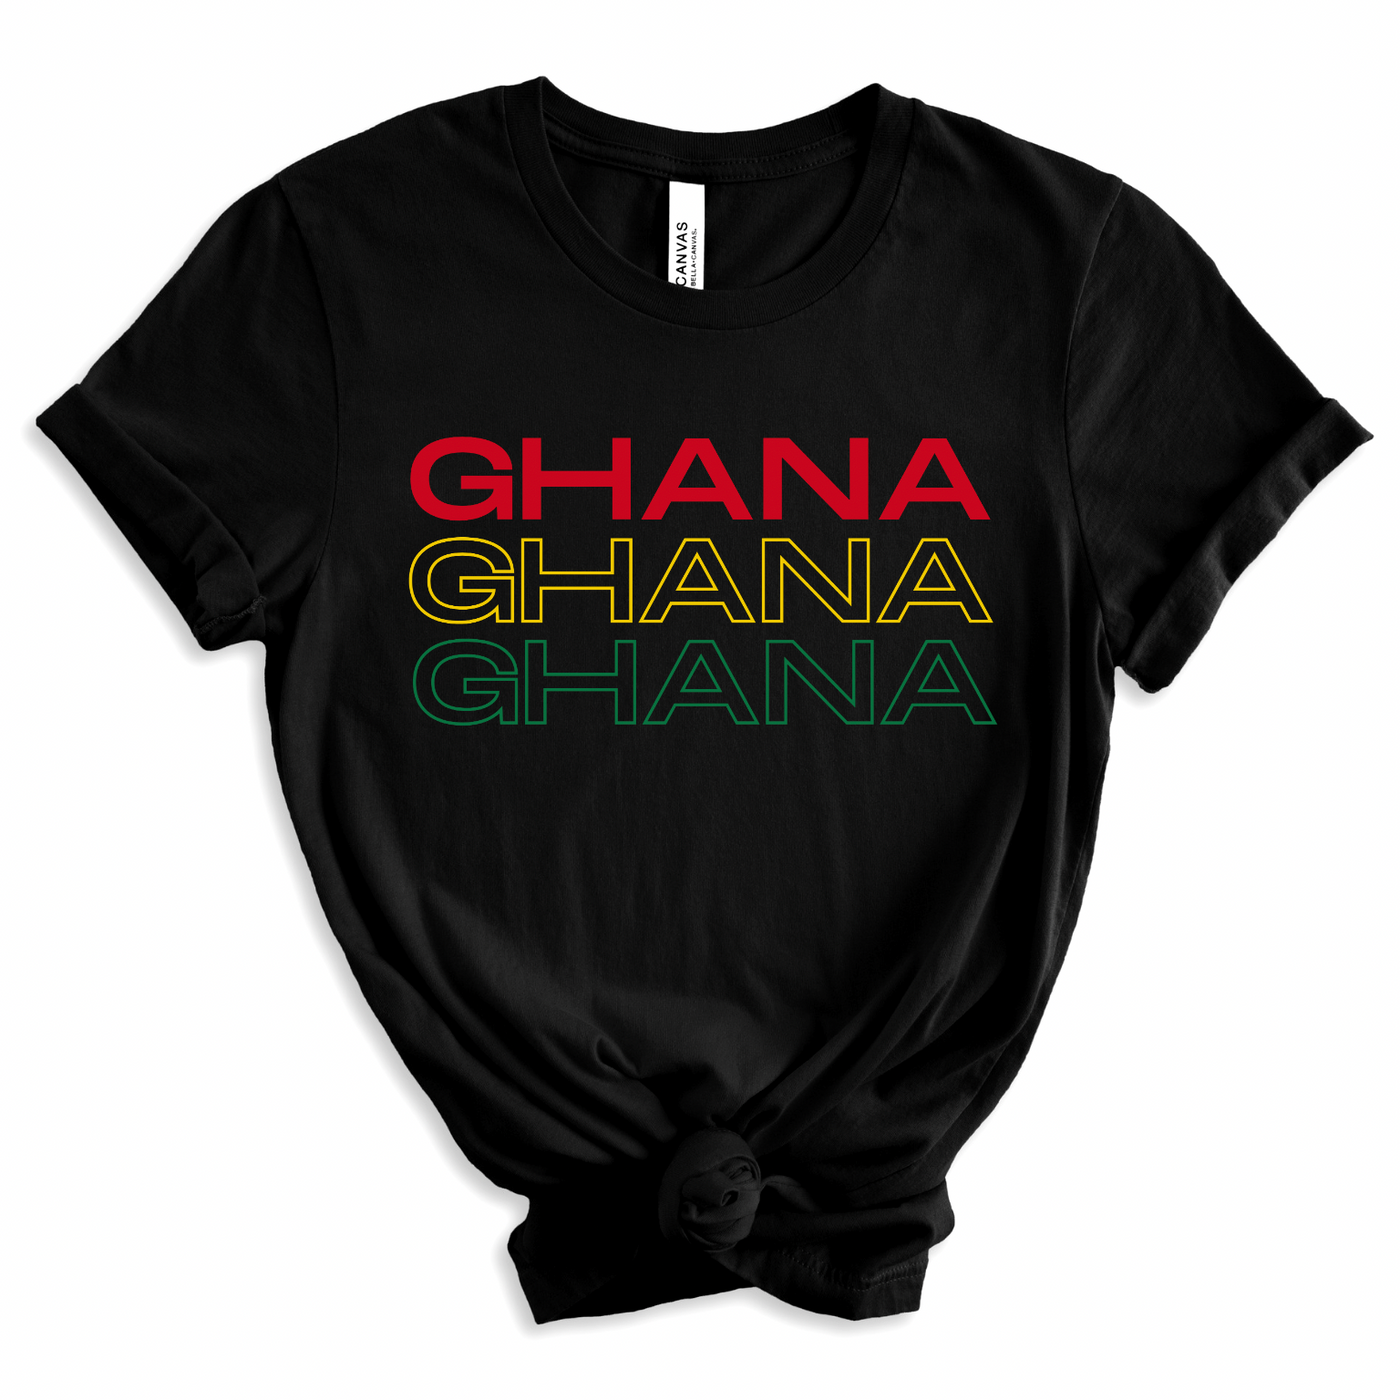 Ghana T-shirt